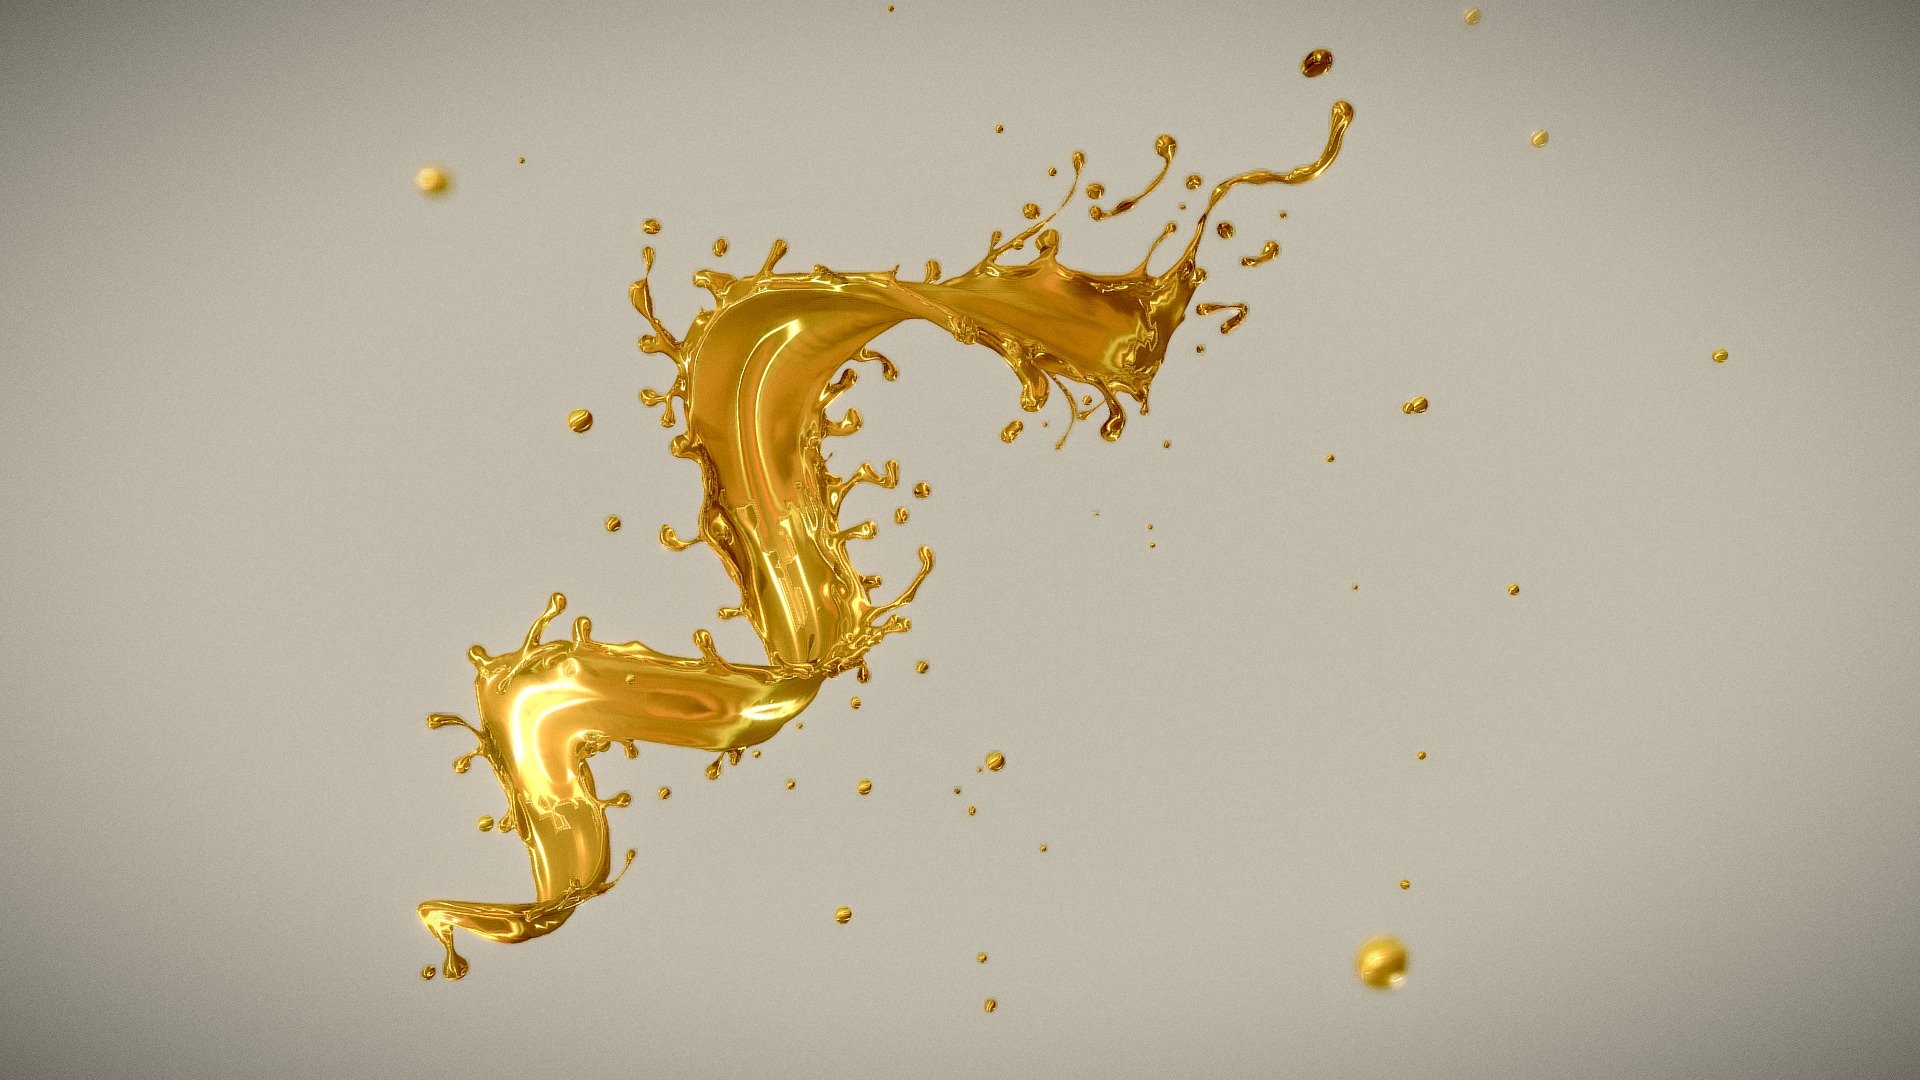 fluid effect of Gold splash in twisted shape, fbx model 3d model